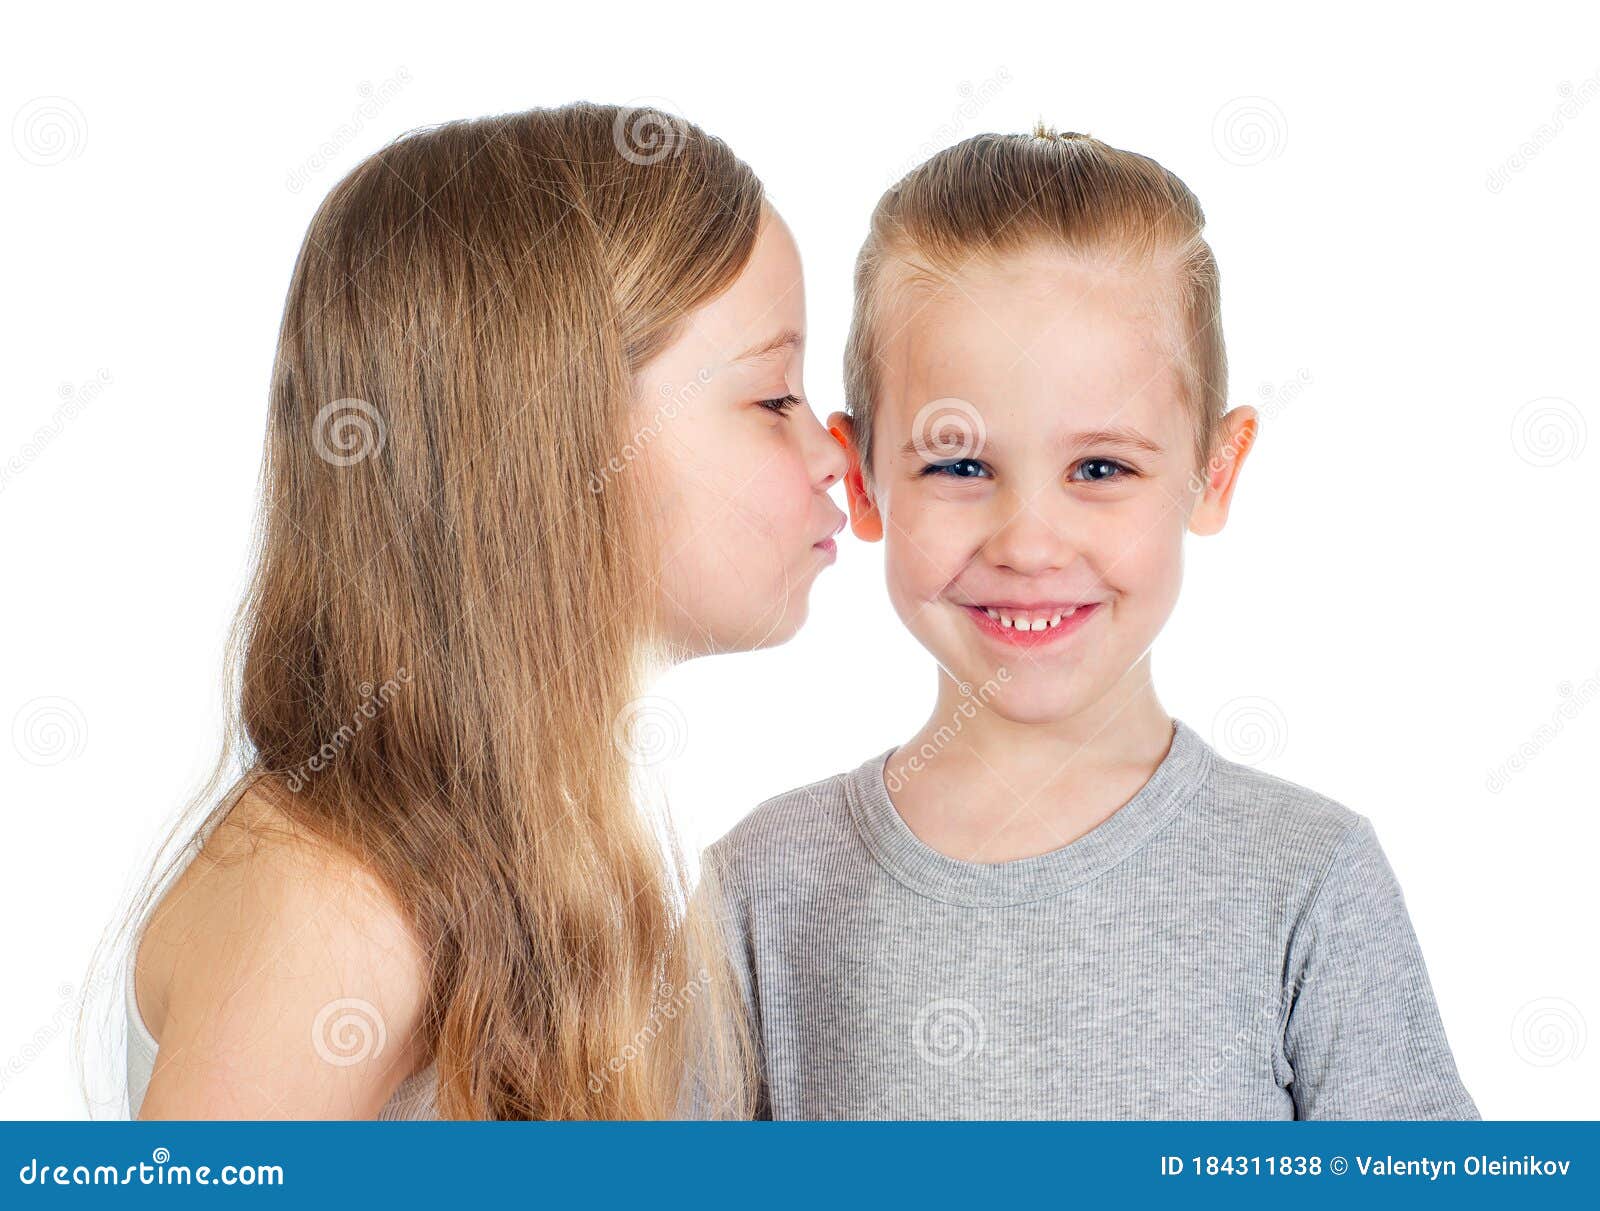 Boys kiss girls. Мальчик целует девочку. Мальчик целует девочку на белом фоне. Девочка целует мальчика в щеку стоковое изображение. Мальчик и девочка улыбаются.